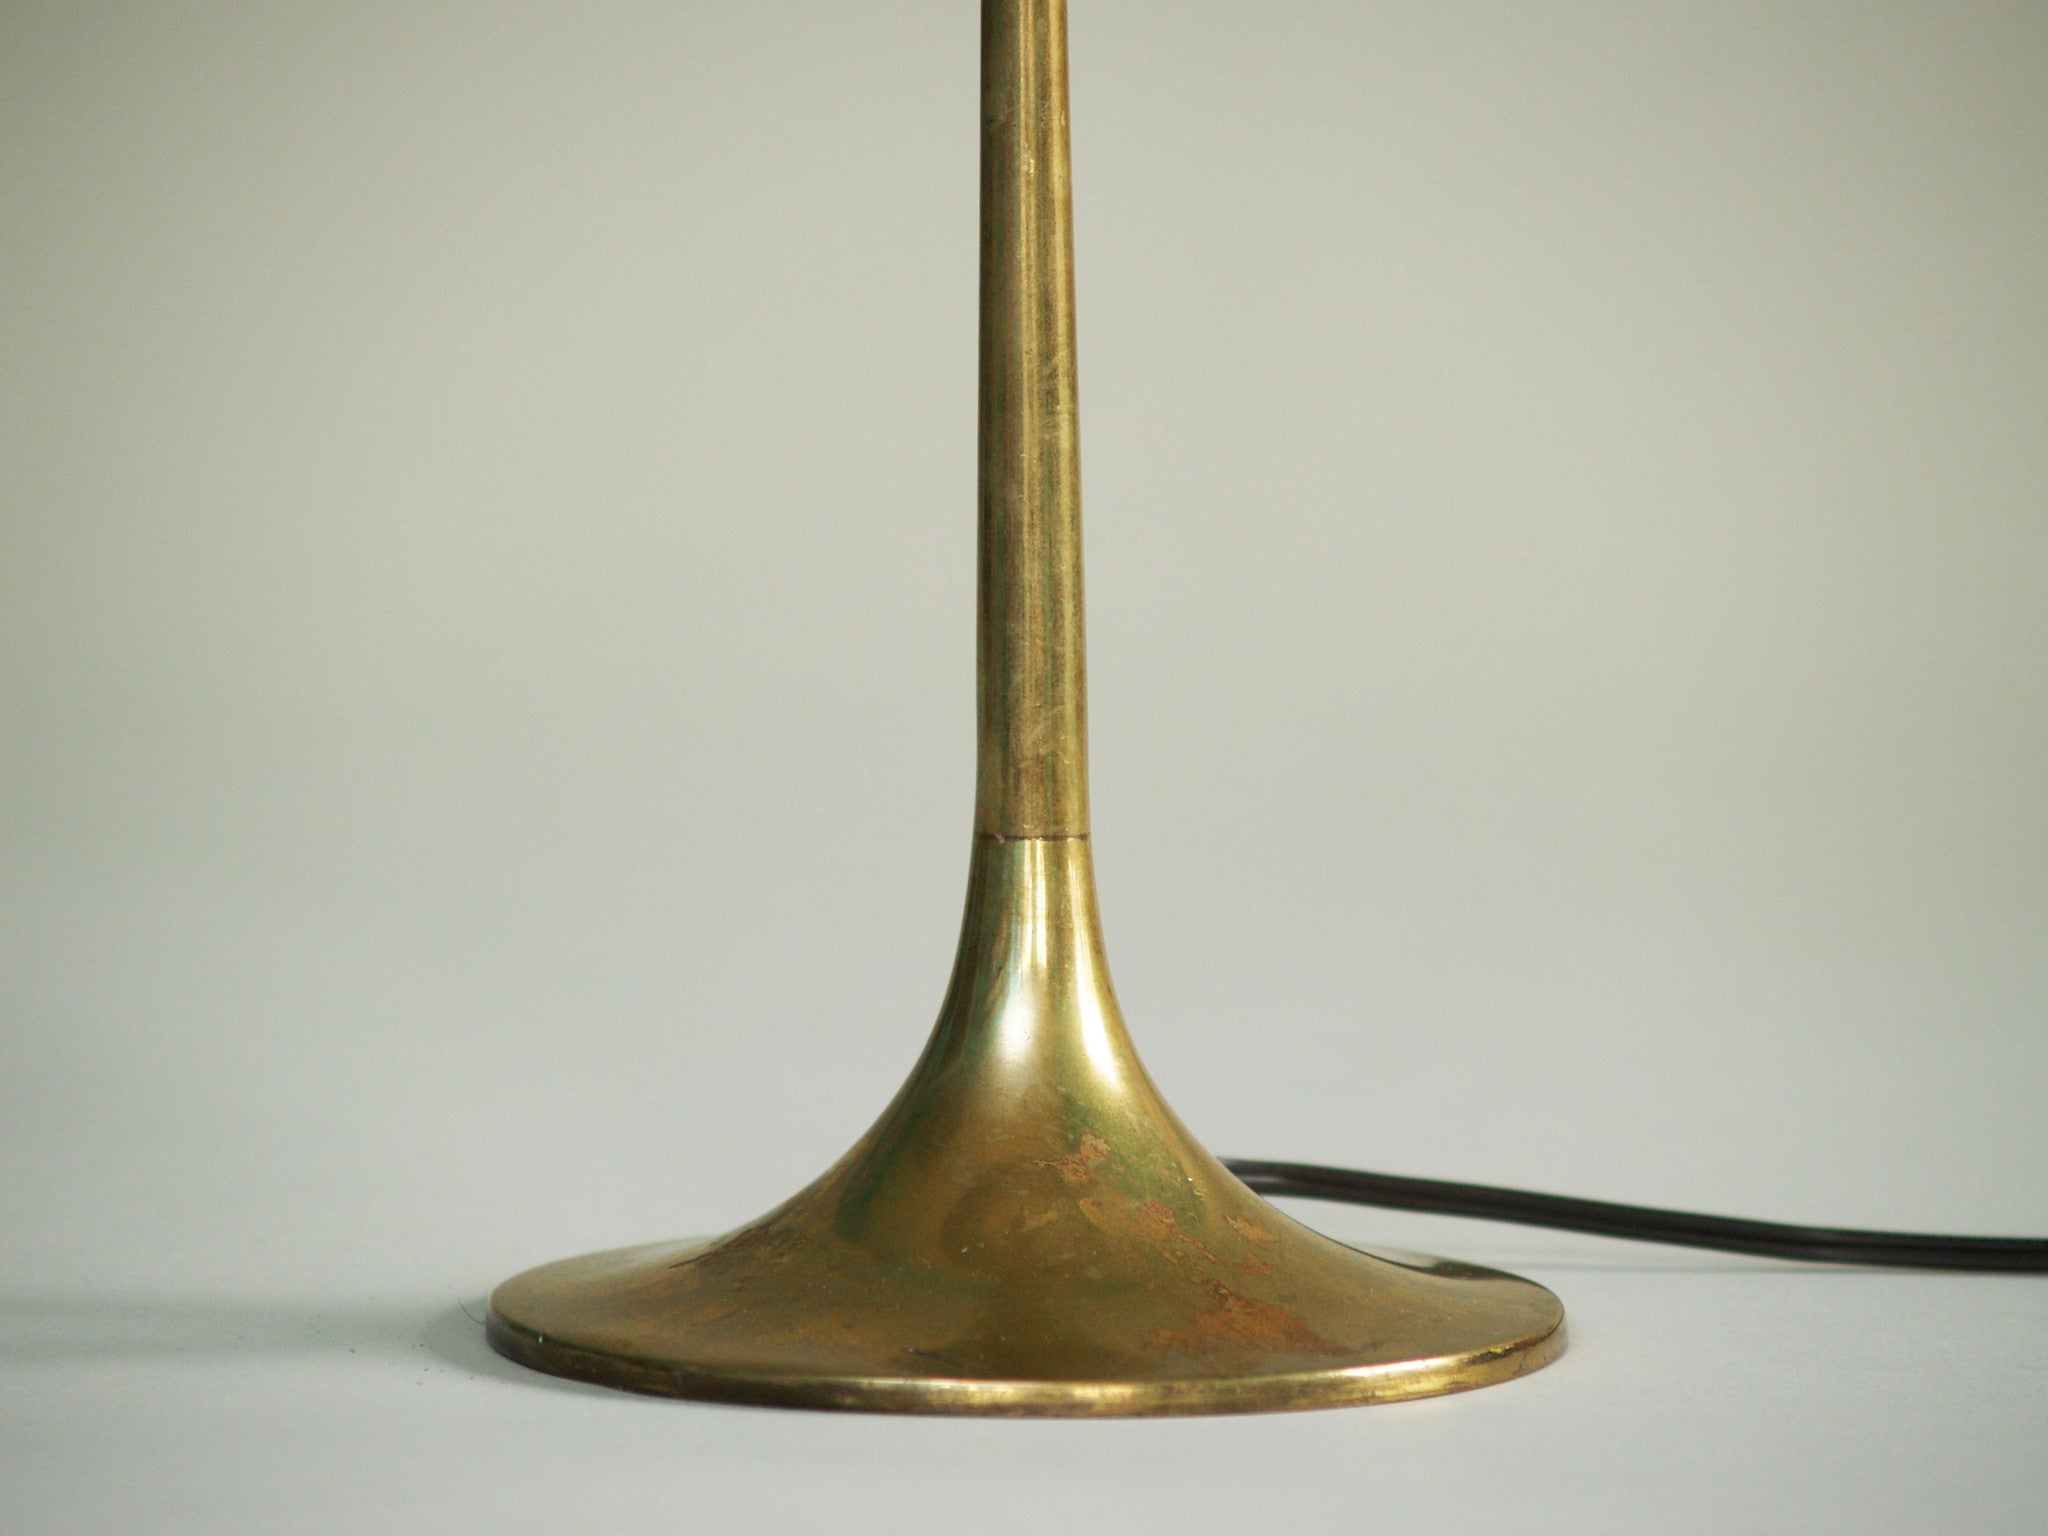 Lampe Grâce suédoise, Suède (vers 1940)..Swedish Grace Table lamp, Sweden (circa 1940)